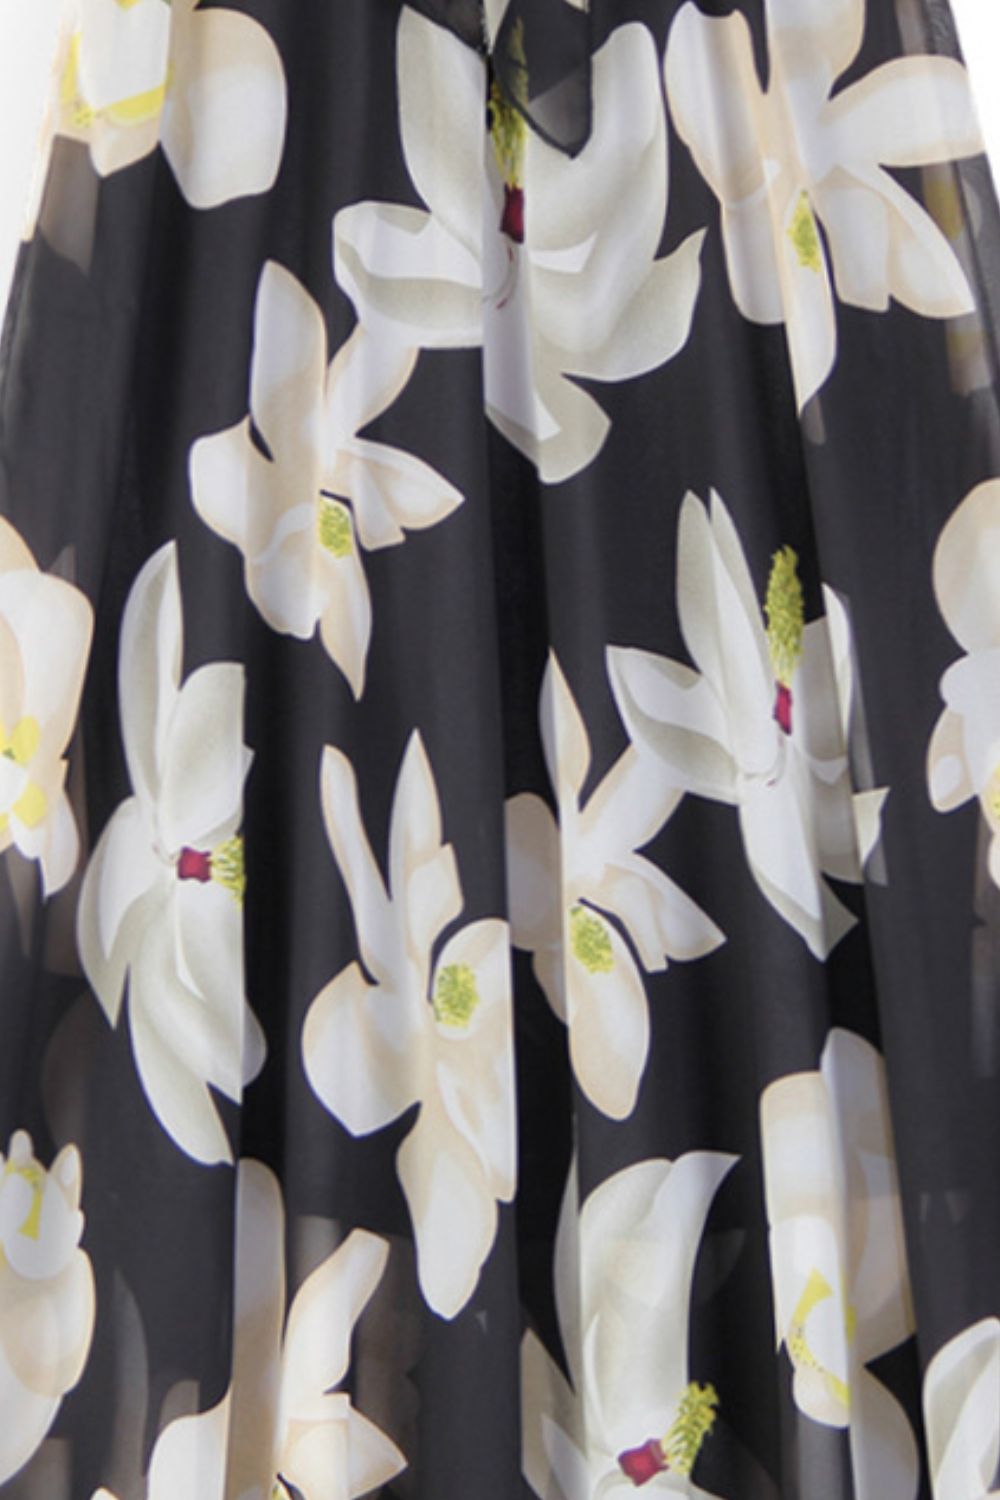 Modest Mid Calf Floral Tie-Waist Skirt